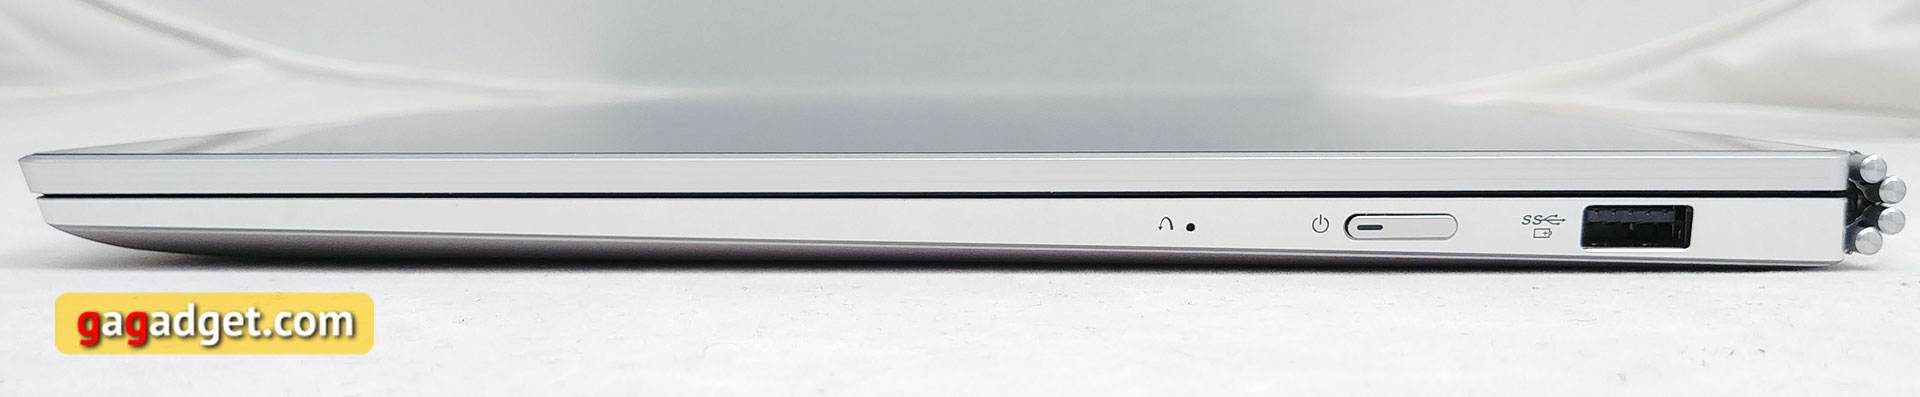 Обзор Lenovo Yoga 920 Vibes: флагманский ультрабук-трансформер для любителей выделиться-11